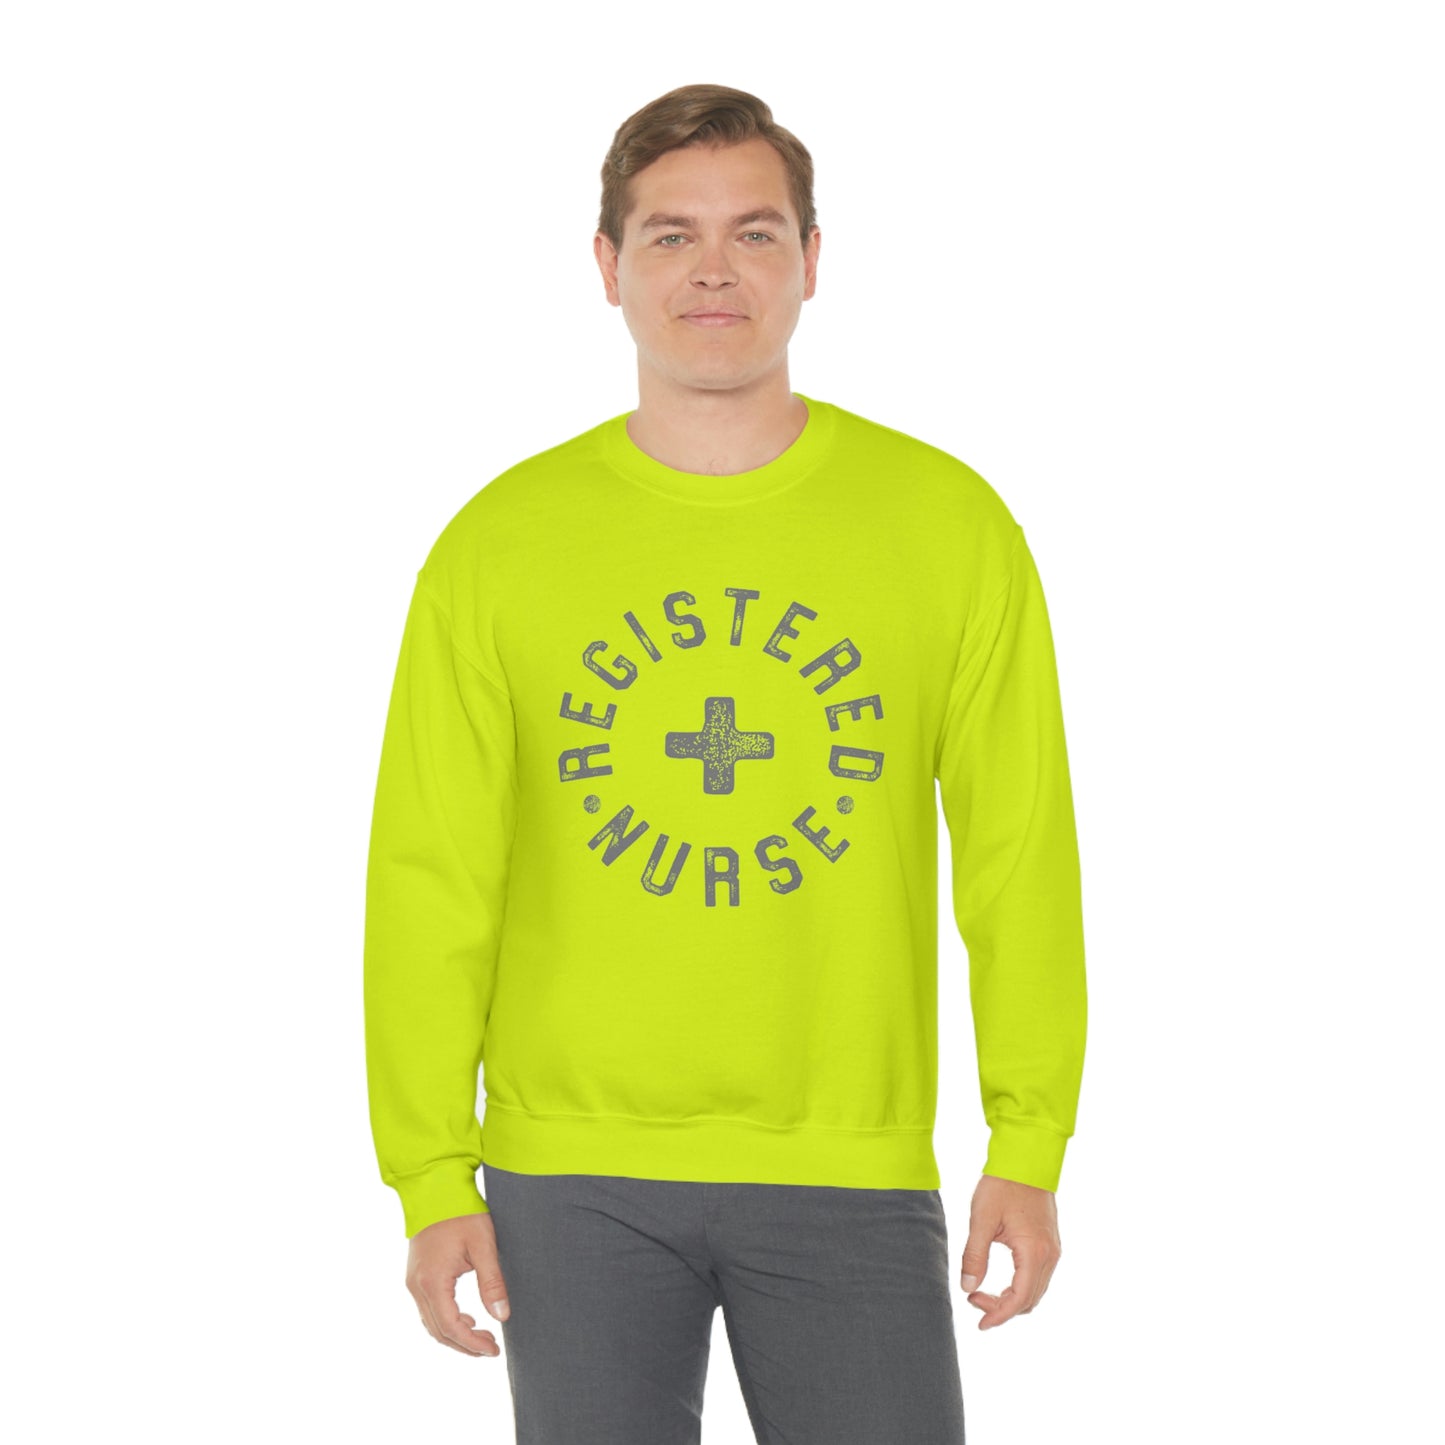 "Registered Nurse" Unisex Crewneck Sweatshirt